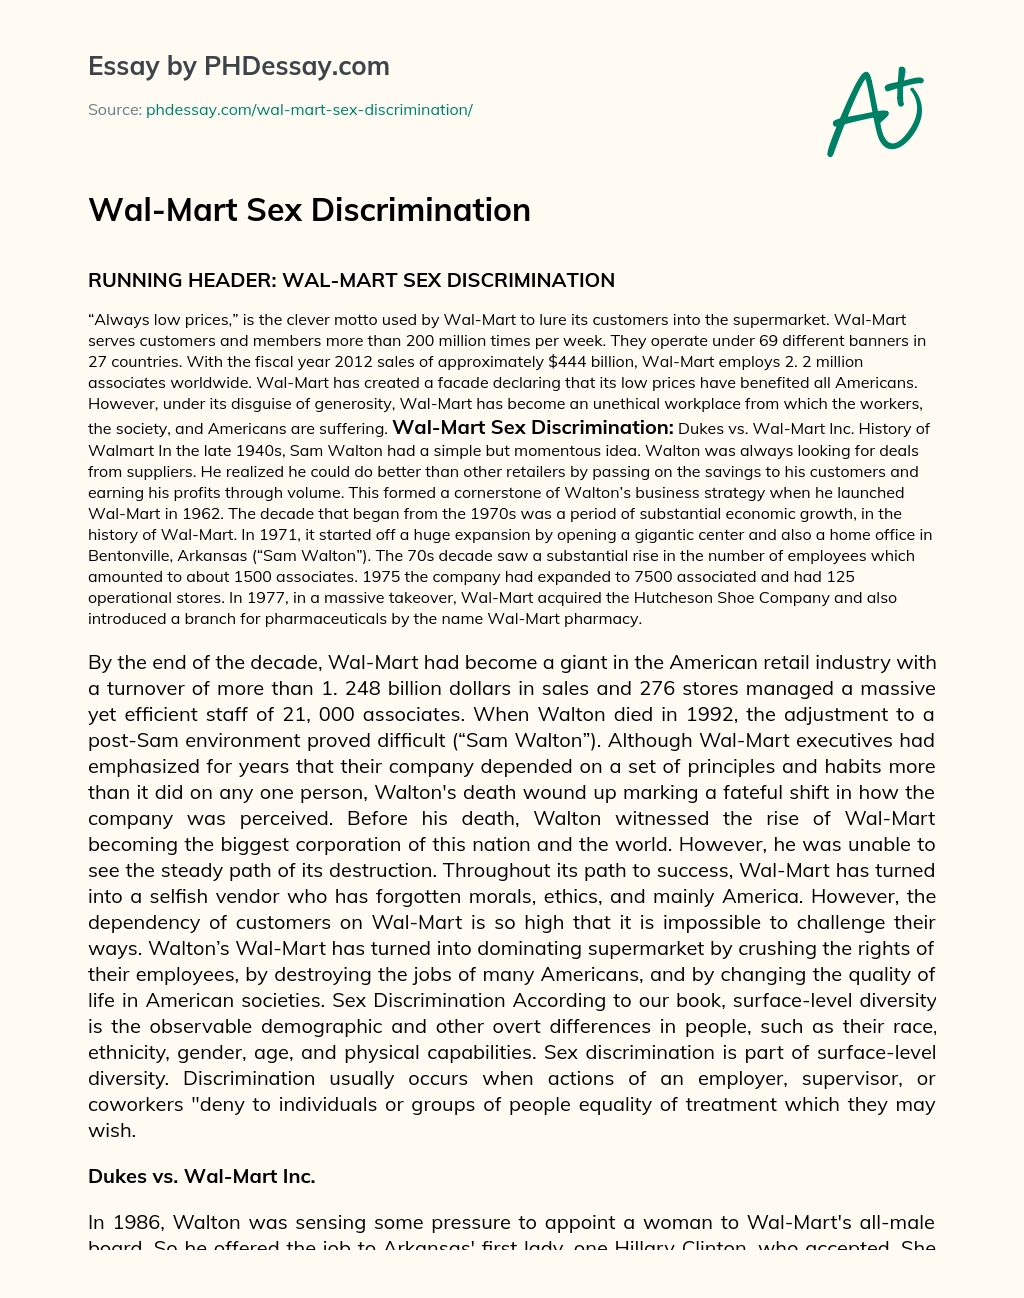 Wal-Mart Sex Discrimination essay